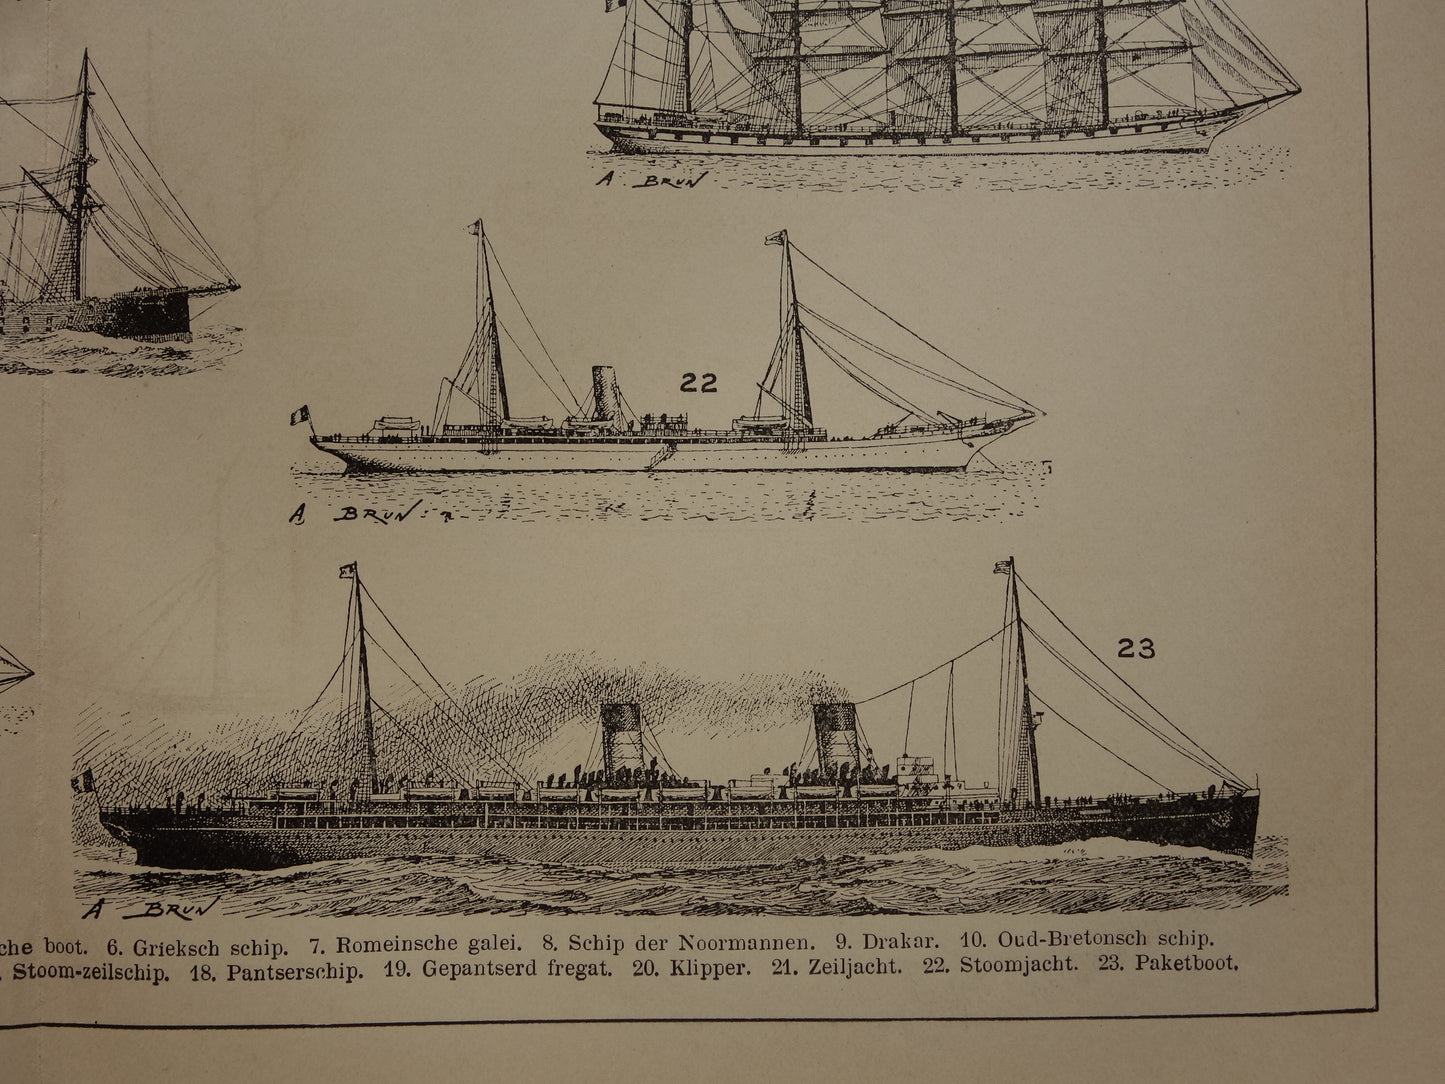 SCHEPEN antieke illustratie over geschiedenis Scheepsontwerp - 1909 originele oude schip scheepvaart print - vintage marine prints